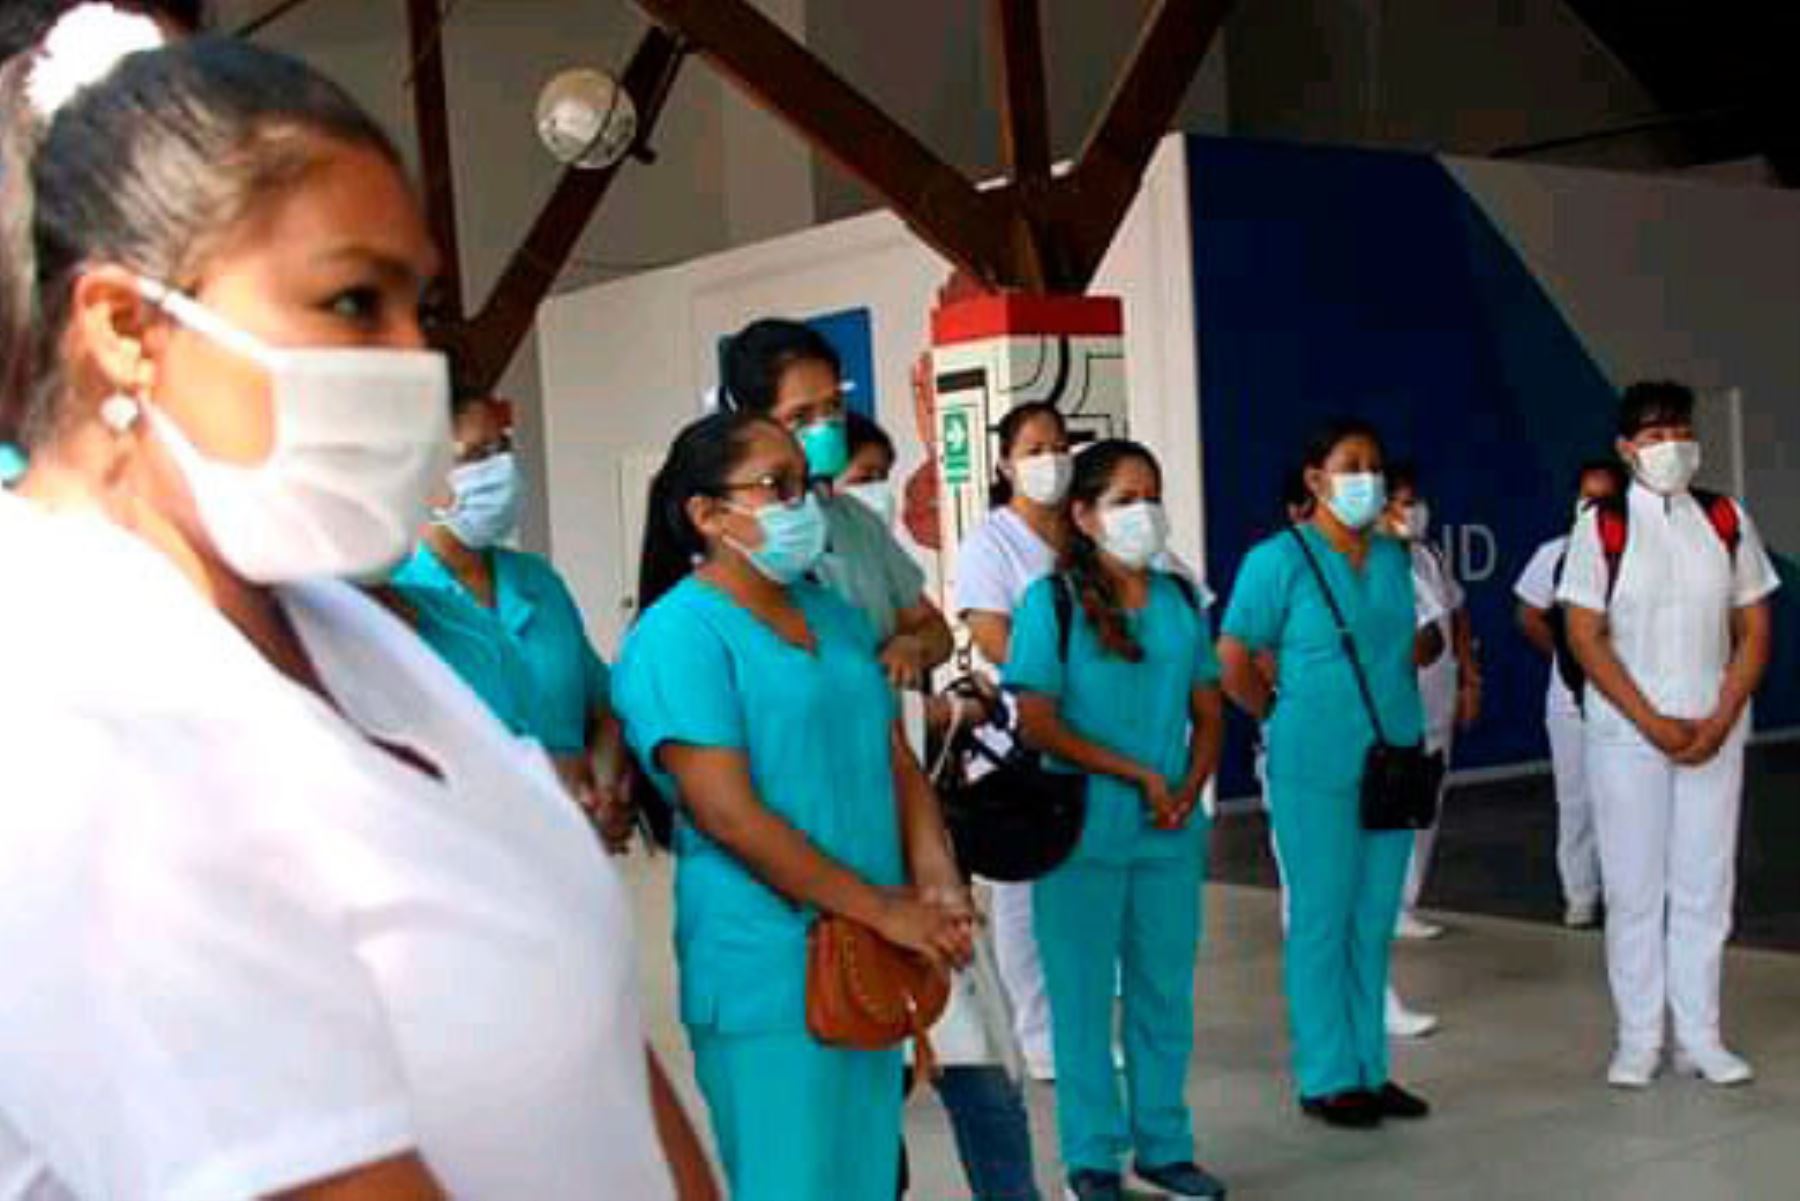 En el Campo Ferial Yarinacocha, en Pucallpa (Ucayali), se instaló un ambiente de hospitalización temporal para pacientes covid-19.